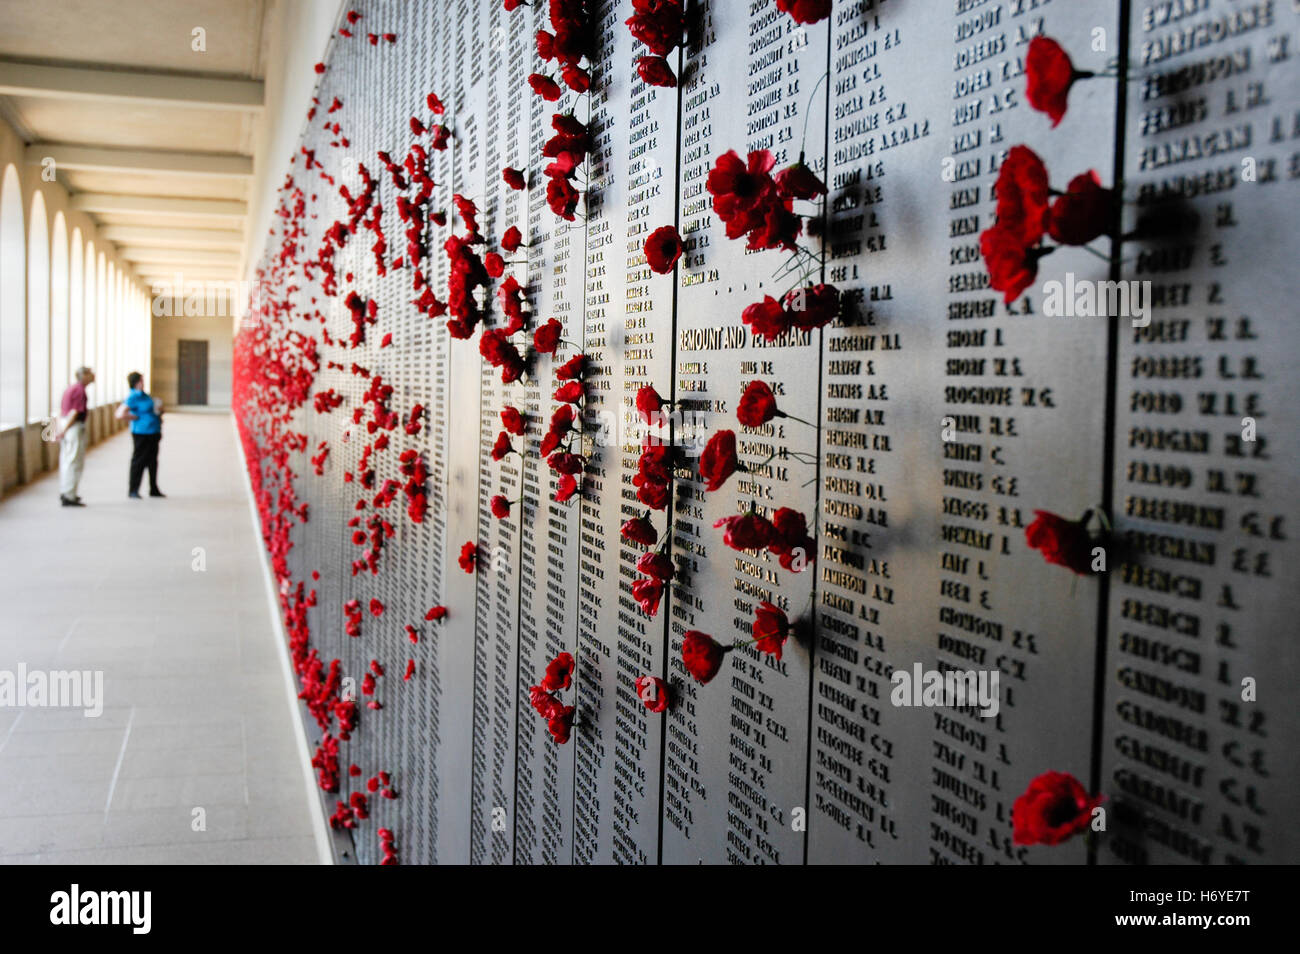 Visiteurs quittent papier rouge coquelicots dans tableau d'honneur wall pour les proches tués en action. Mémorial australien de la guerre de Canberra. act. Banque D'Images